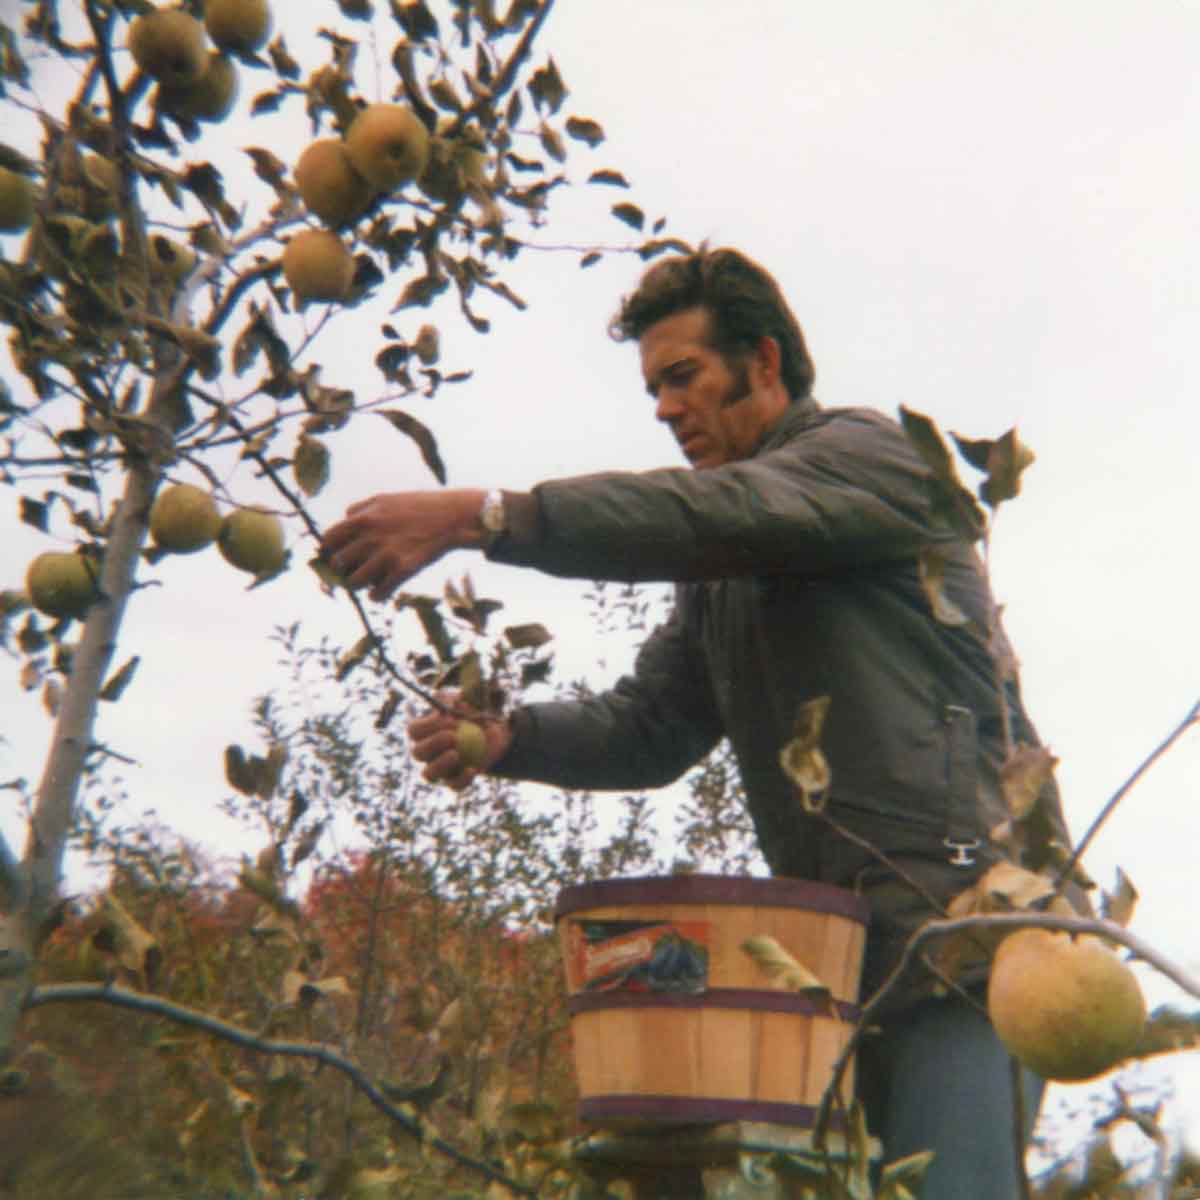 En man på en stege plockar äpplen.